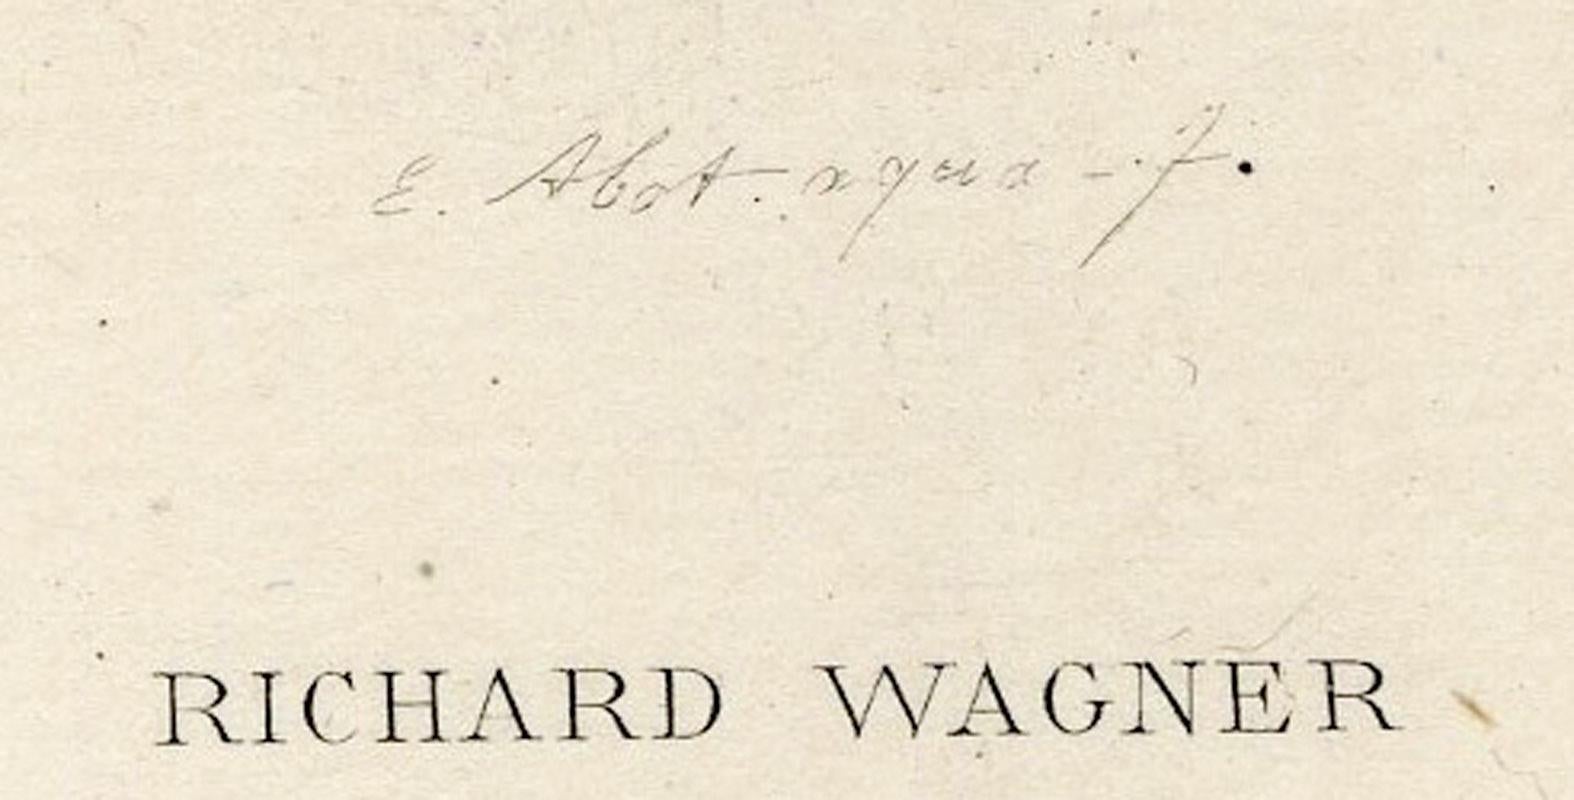 A Richard Wagner
Gravure à l'eau-forte, C.I.C.
Signé dans la plaque (voir photo)
Edition : c.I.C. 200 impressions
État : neuf
Taille de l'image/de l'assiette : 6 5/8 x 4 3/4 pouces
Taille de la feuille : 14 3/8 x 10 7/8 pouces
Provenance : Edmubd